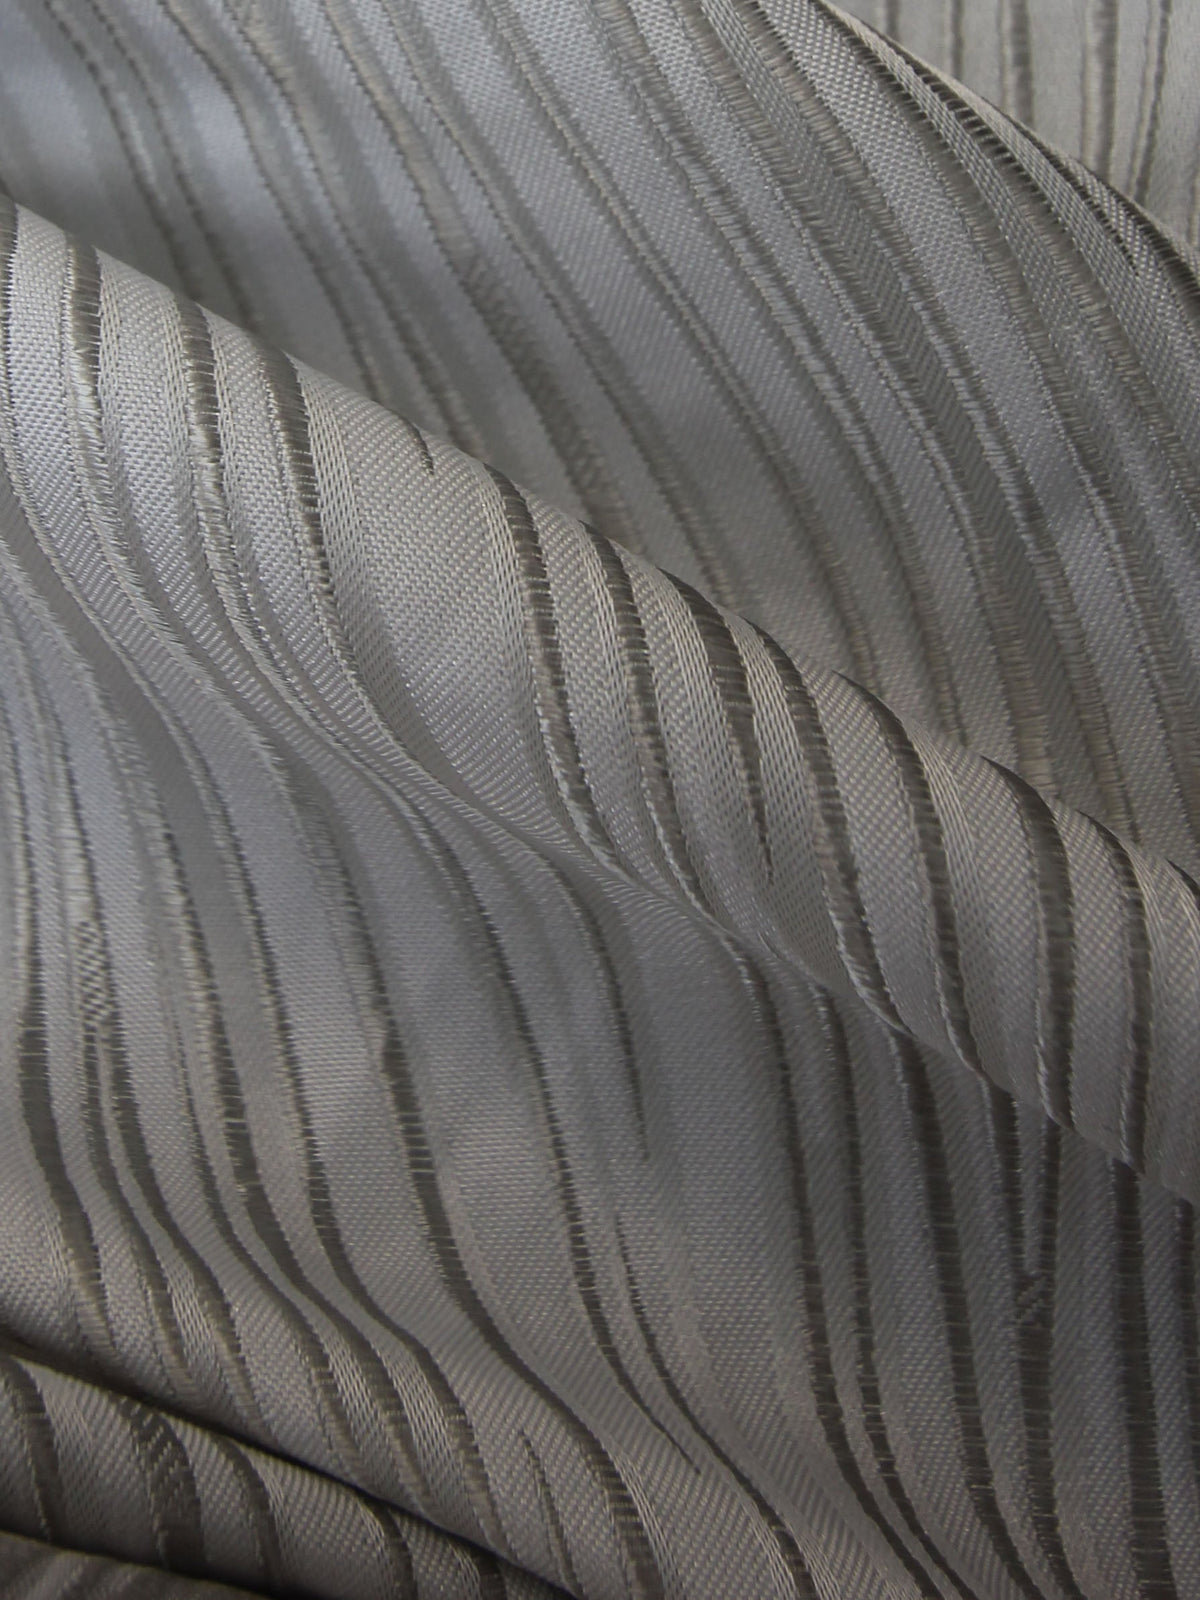 Silver Waistcoat Fabric - Berlin